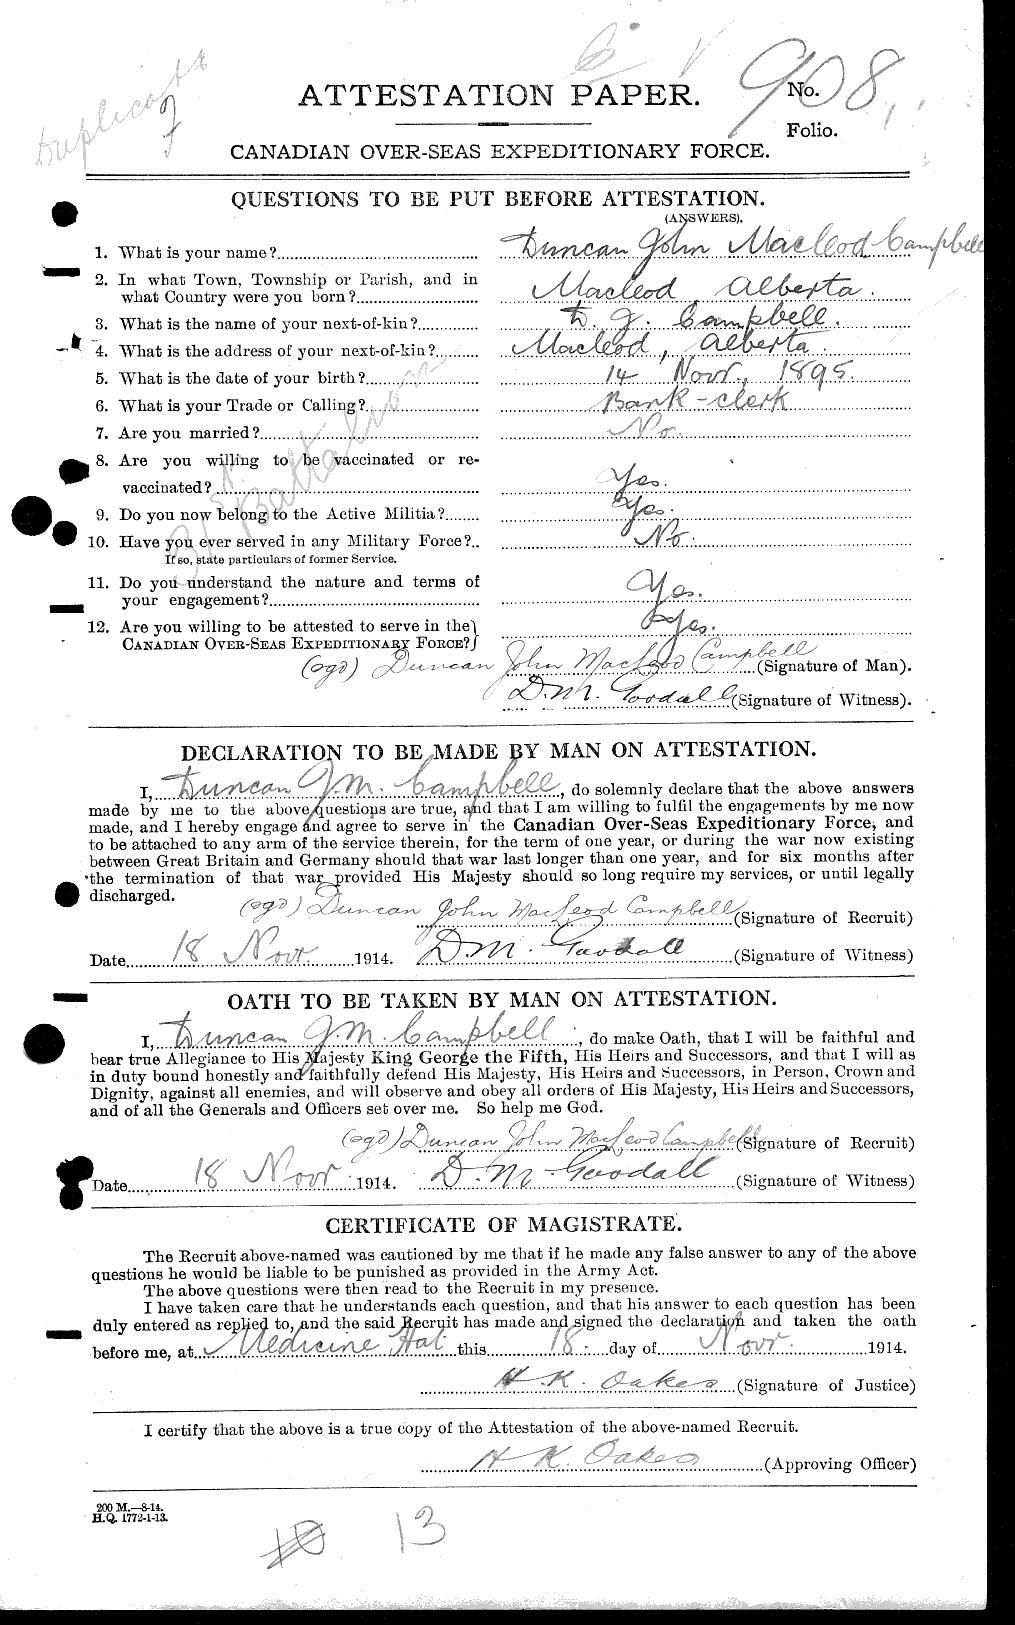 Dossiers du Personnel de la Première Guerre mondiale - CEC 008222a